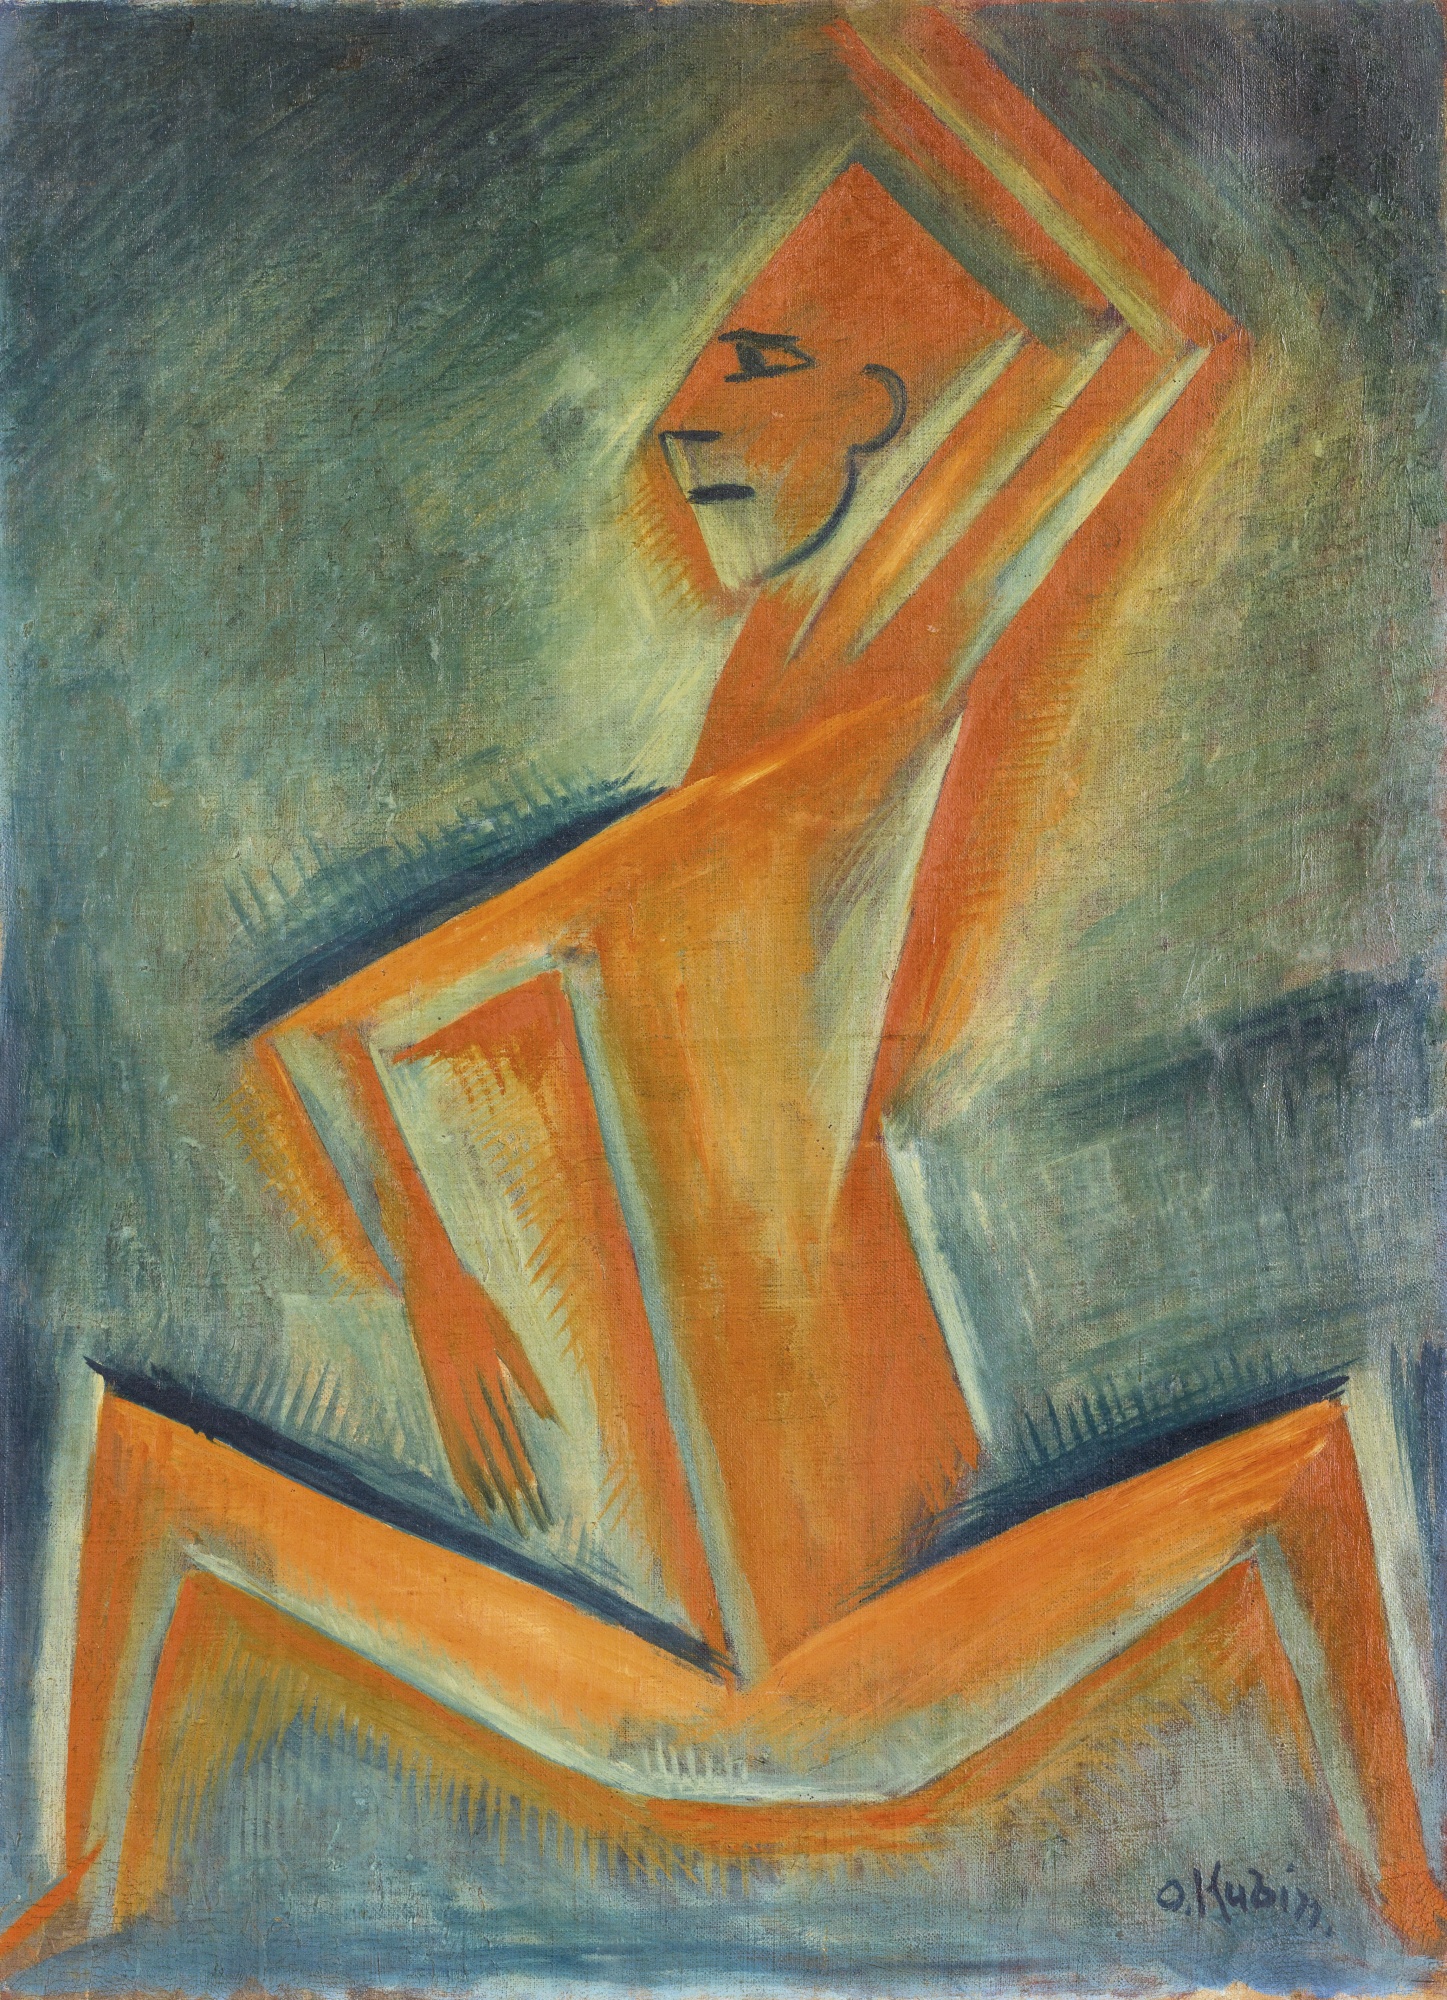  Otakar Kubín: Kubistická figura  olej na plátně / 80 x 60 cm cena: 188 200 GBP / Sotheby’s 12. 11. 2014